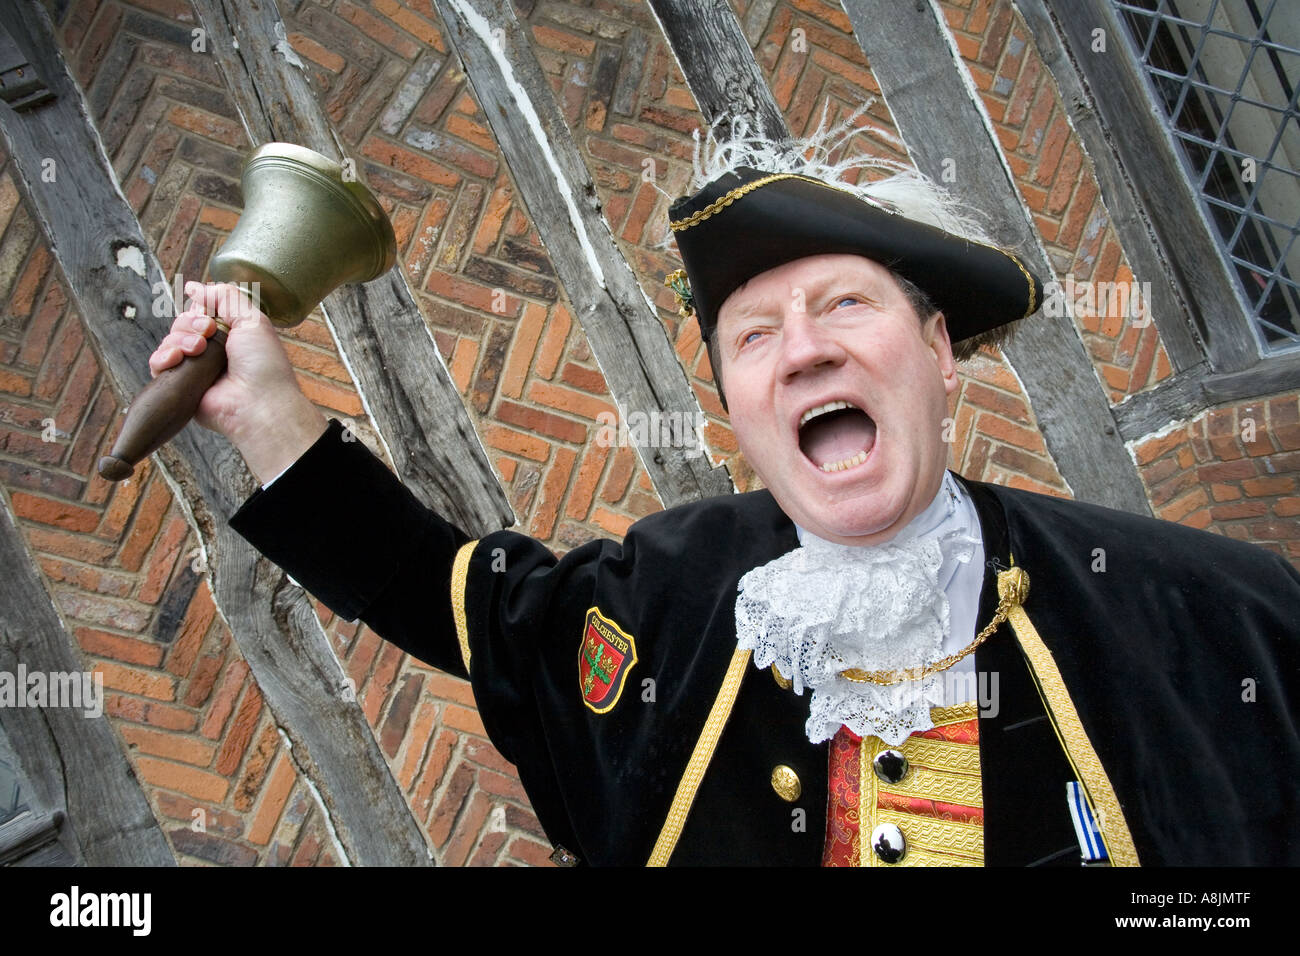 Colchester Town Crier Robert Needham in Aktion seine Glocke läuten und schreien Stockfoto